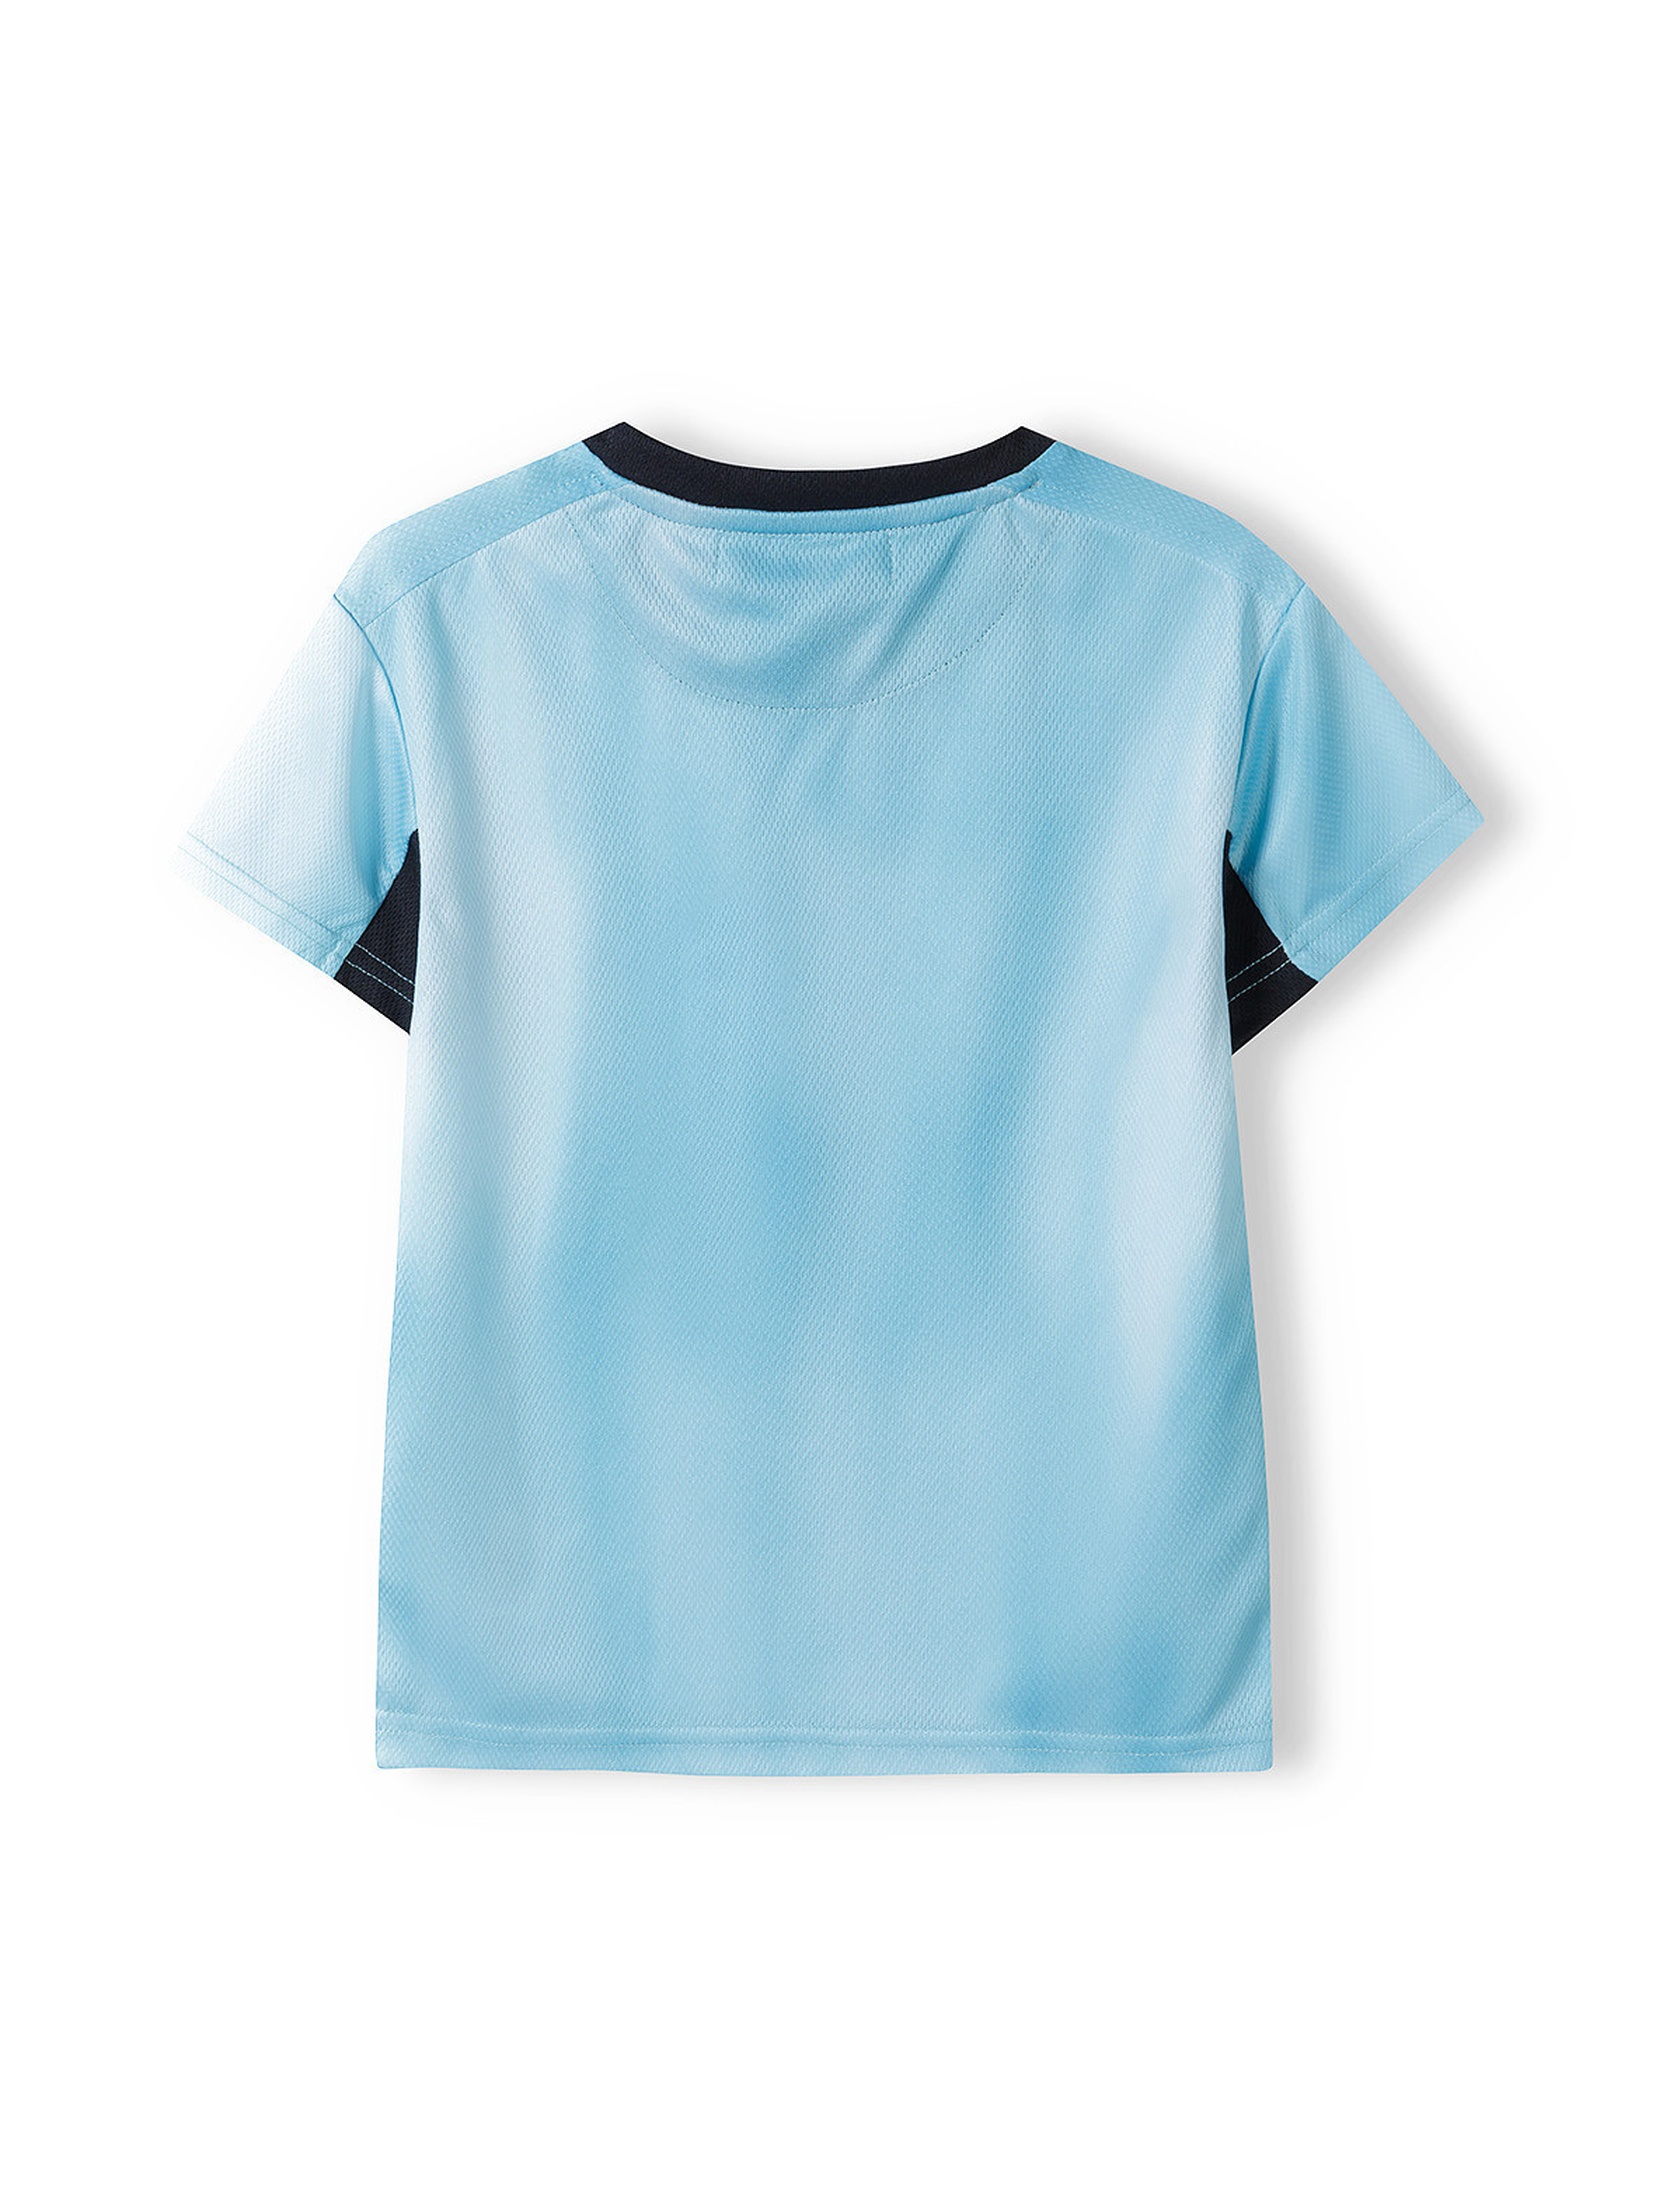 Błękitna koszulka siateczkowa dla chłopca